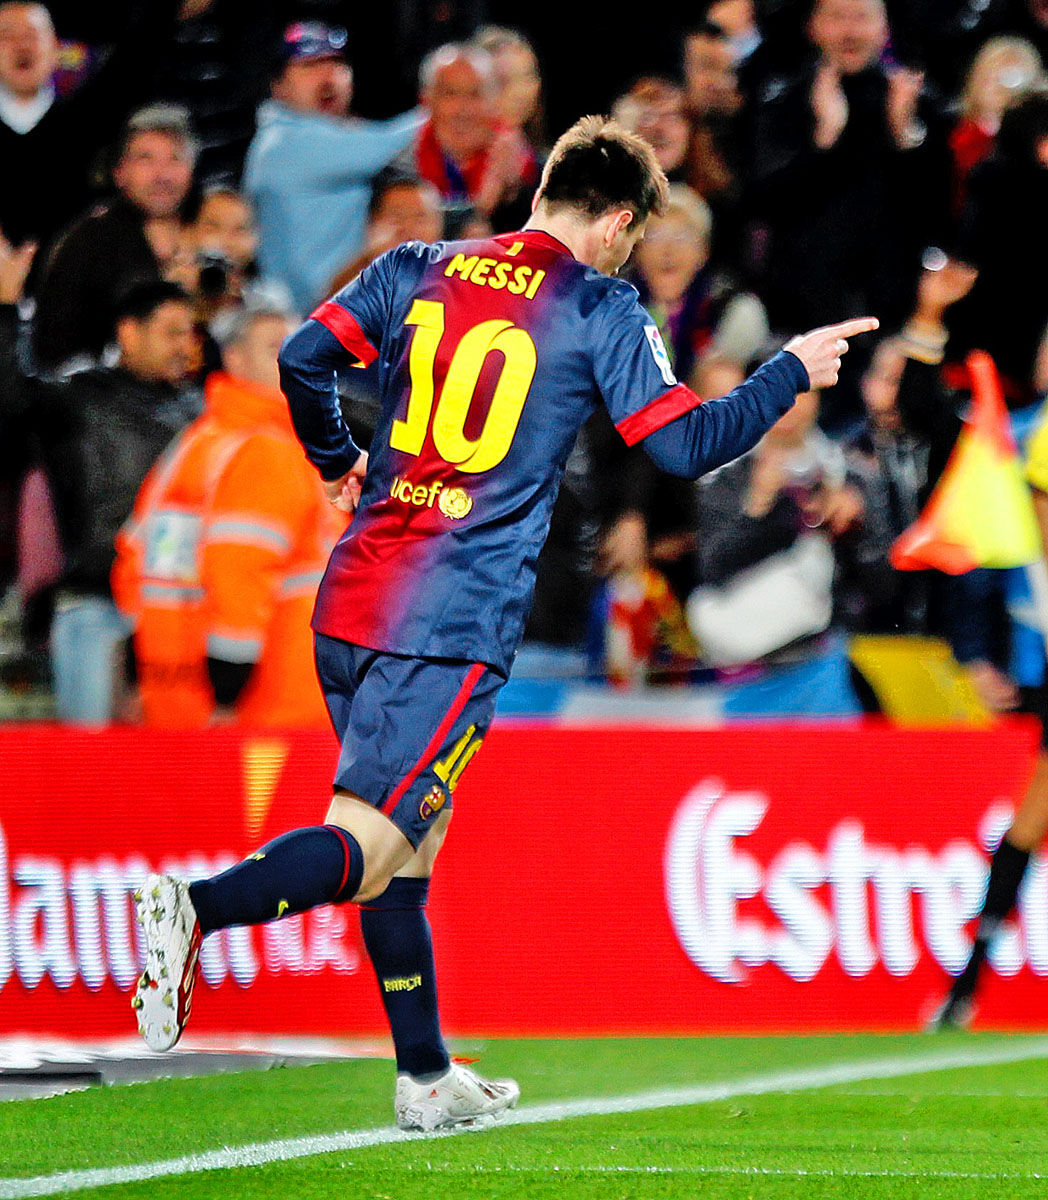 Főszerepben: Messi